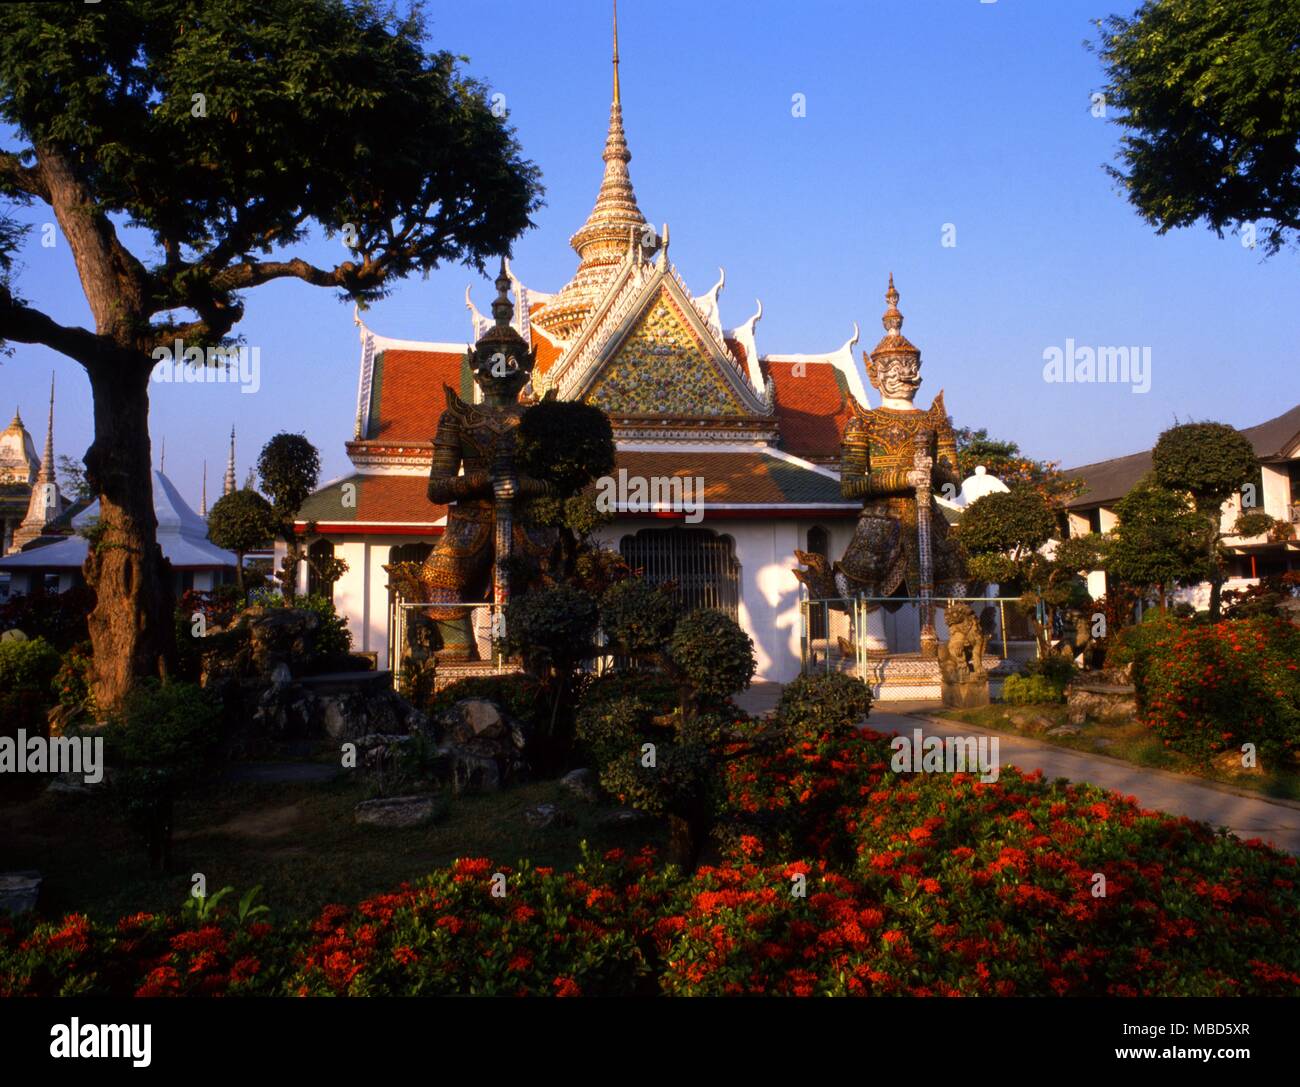 THAILAND - Wat Arun Tempel Tempel der Morgenröte, ist eines der bekanntesten Wahrzeichen und eine der am meisten veröffentlichte Bilder von Bangkok. Stockfoto